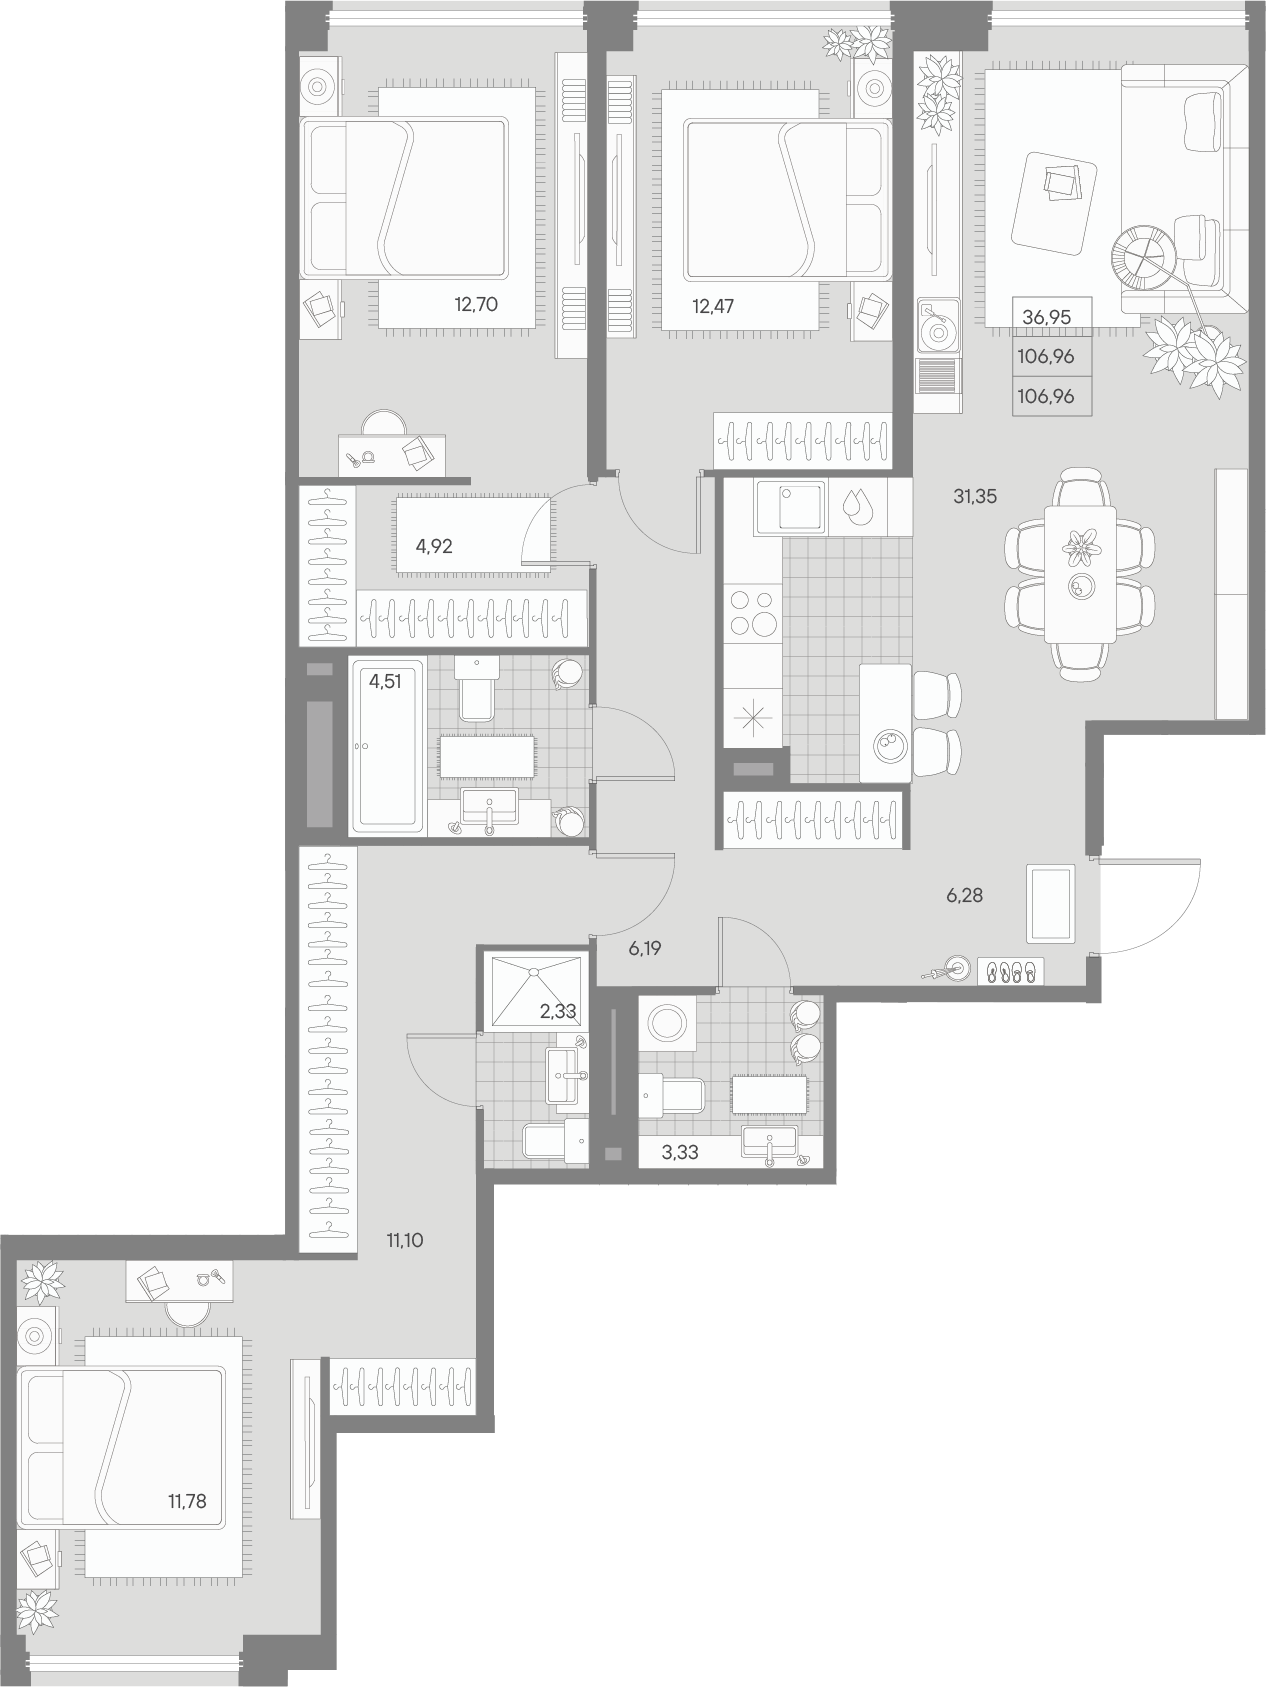 3-комнатная квартира  №187 в Avant: 106.96 м², этаж 5 - купить в Санкт-Петербурге